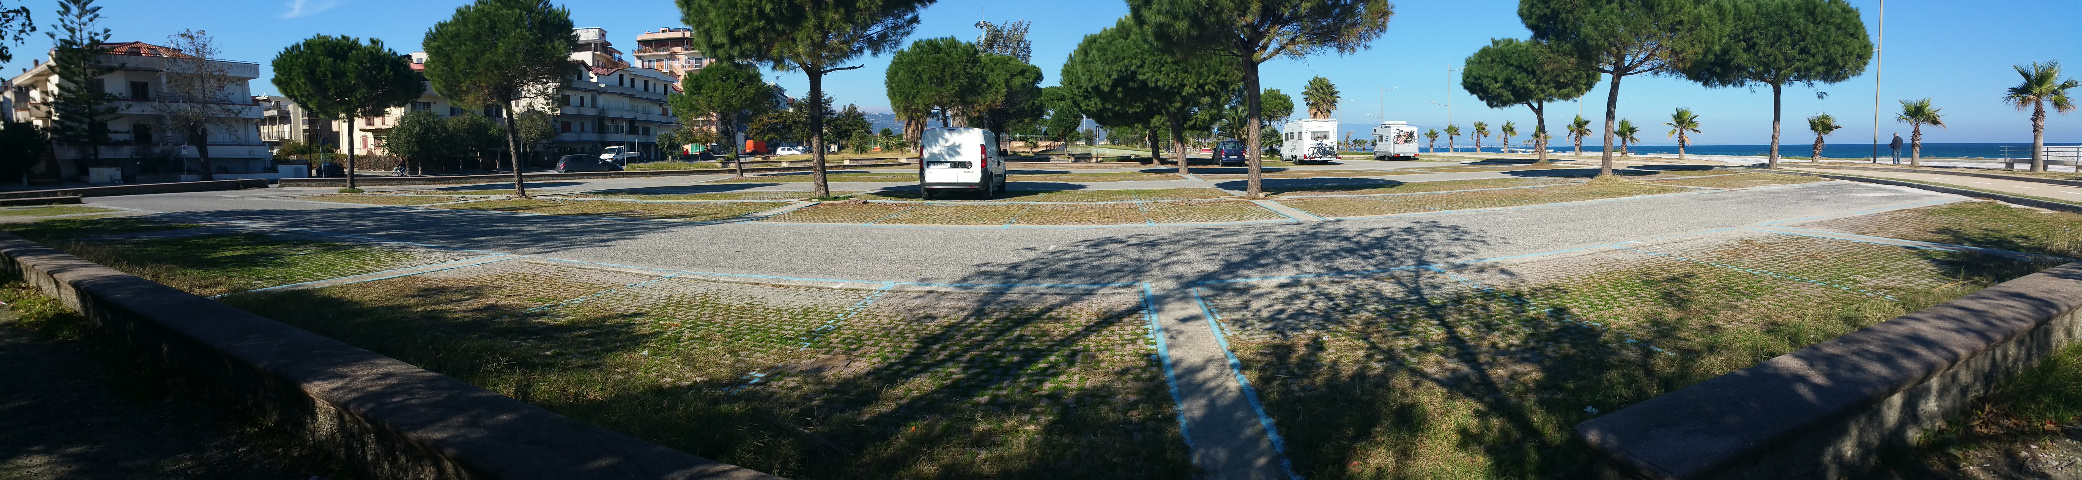  Parcheggio e pernottamento presso la spiaggia di Soverato.